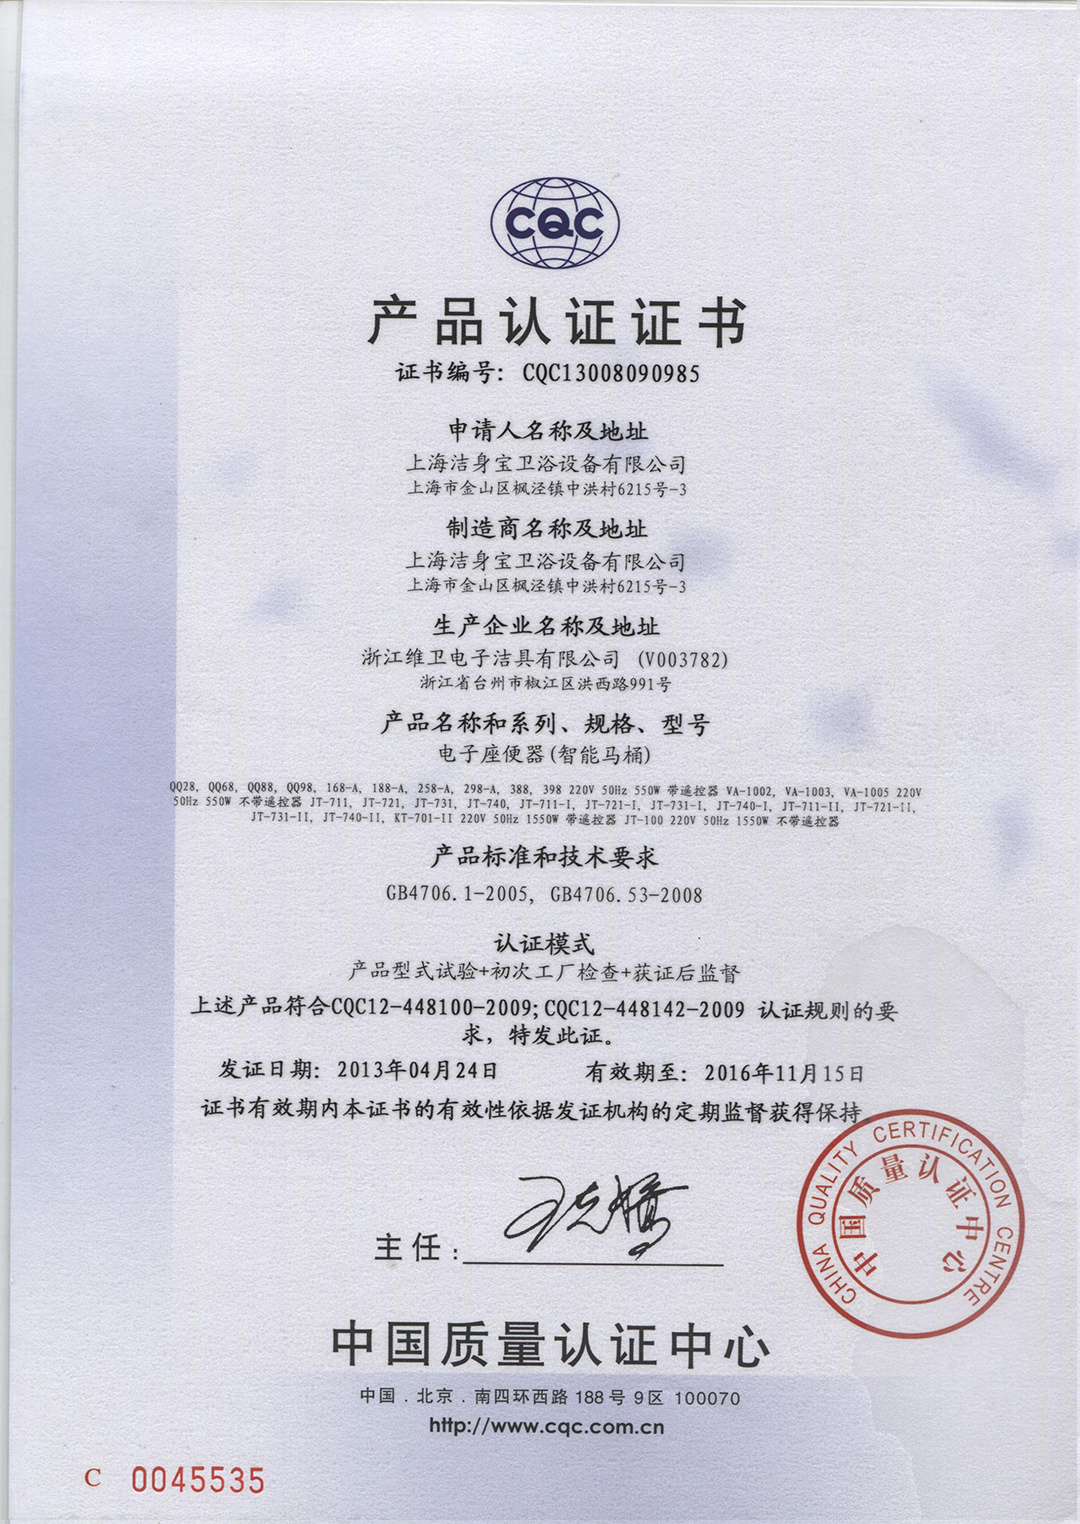 產品認證證書（中文版）